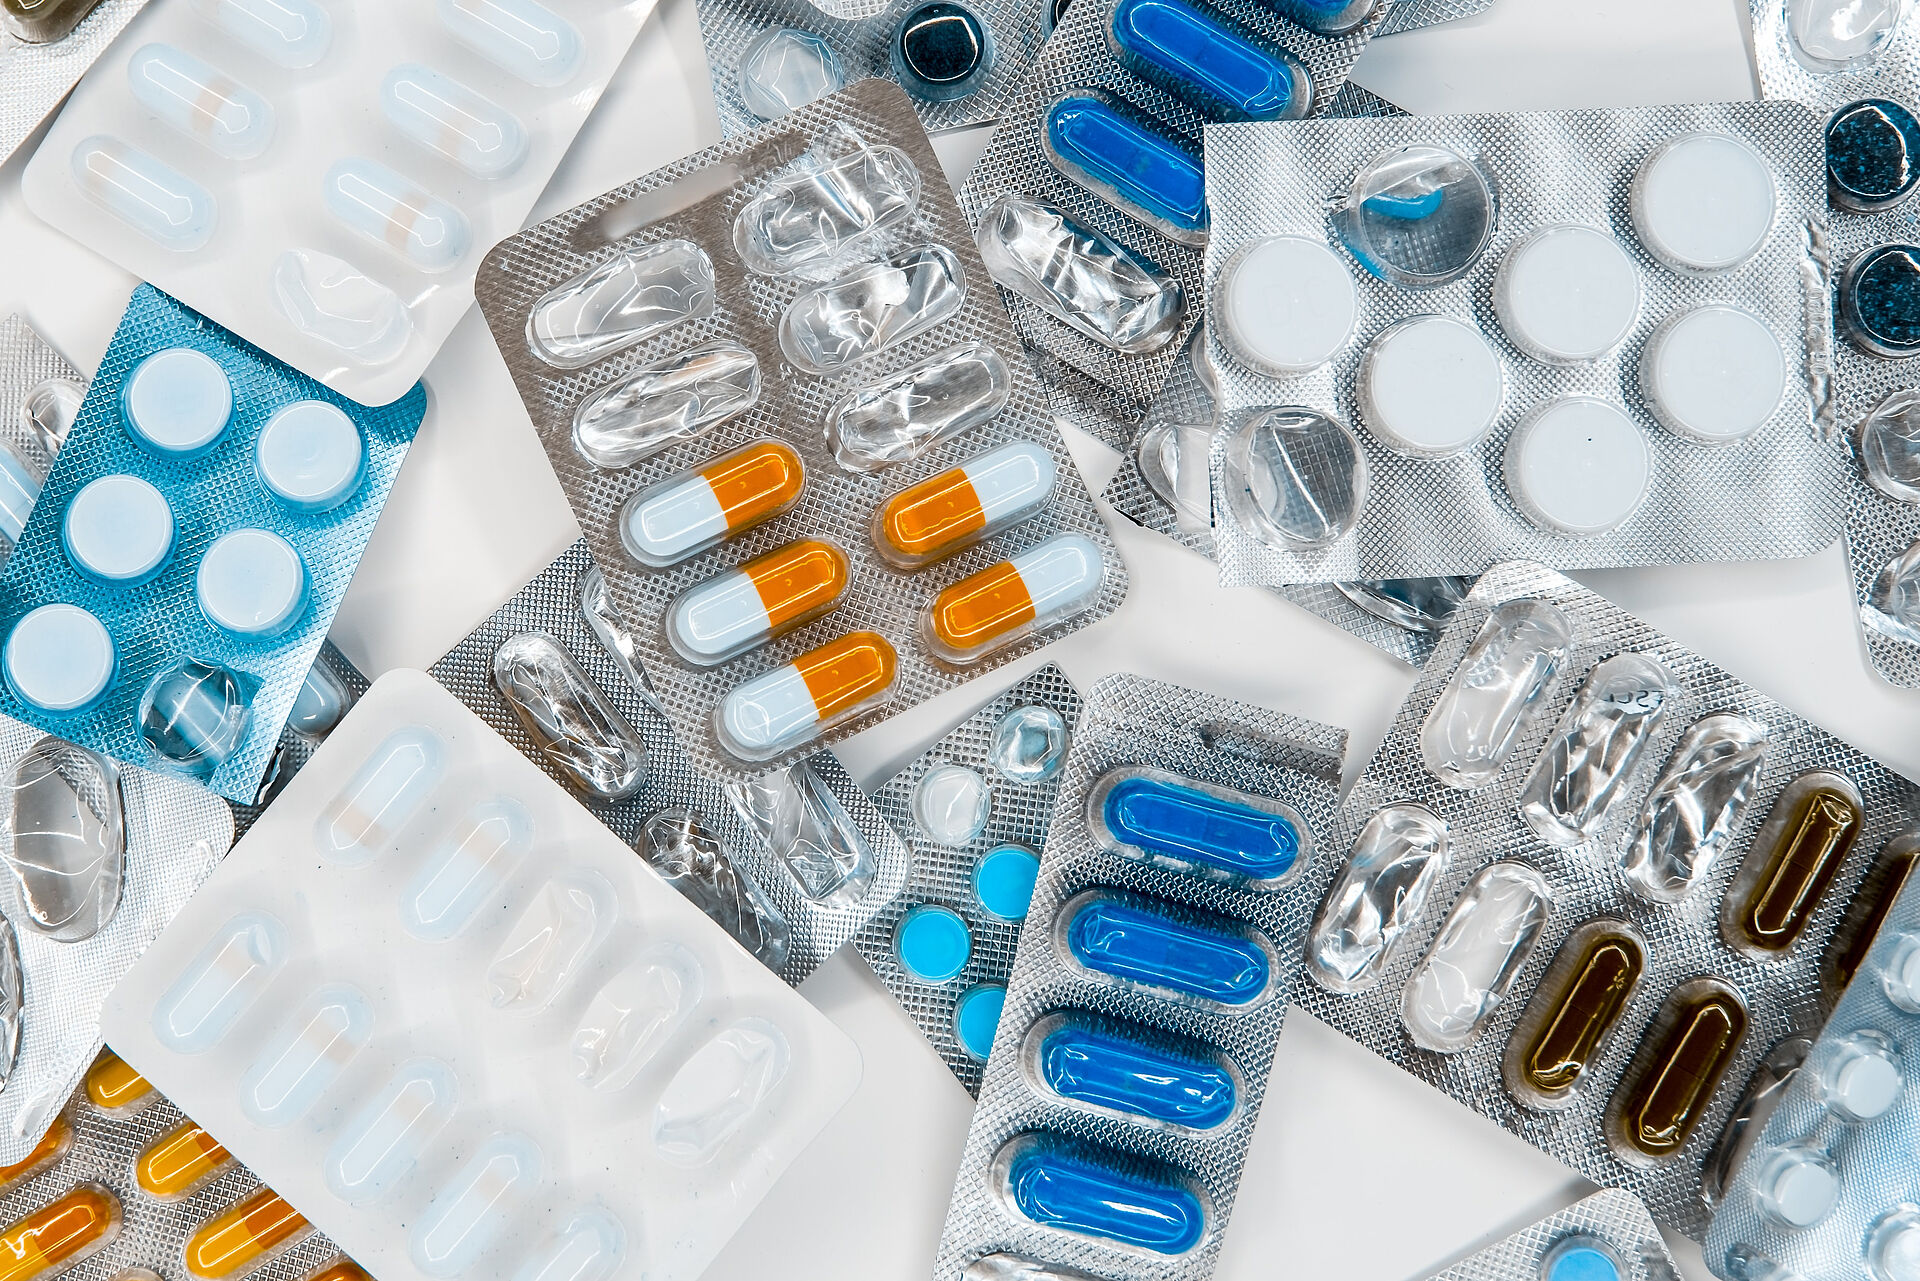 Unterschiedliche Tabletten, Pillen und Kapseln in Blister-Verpackungen